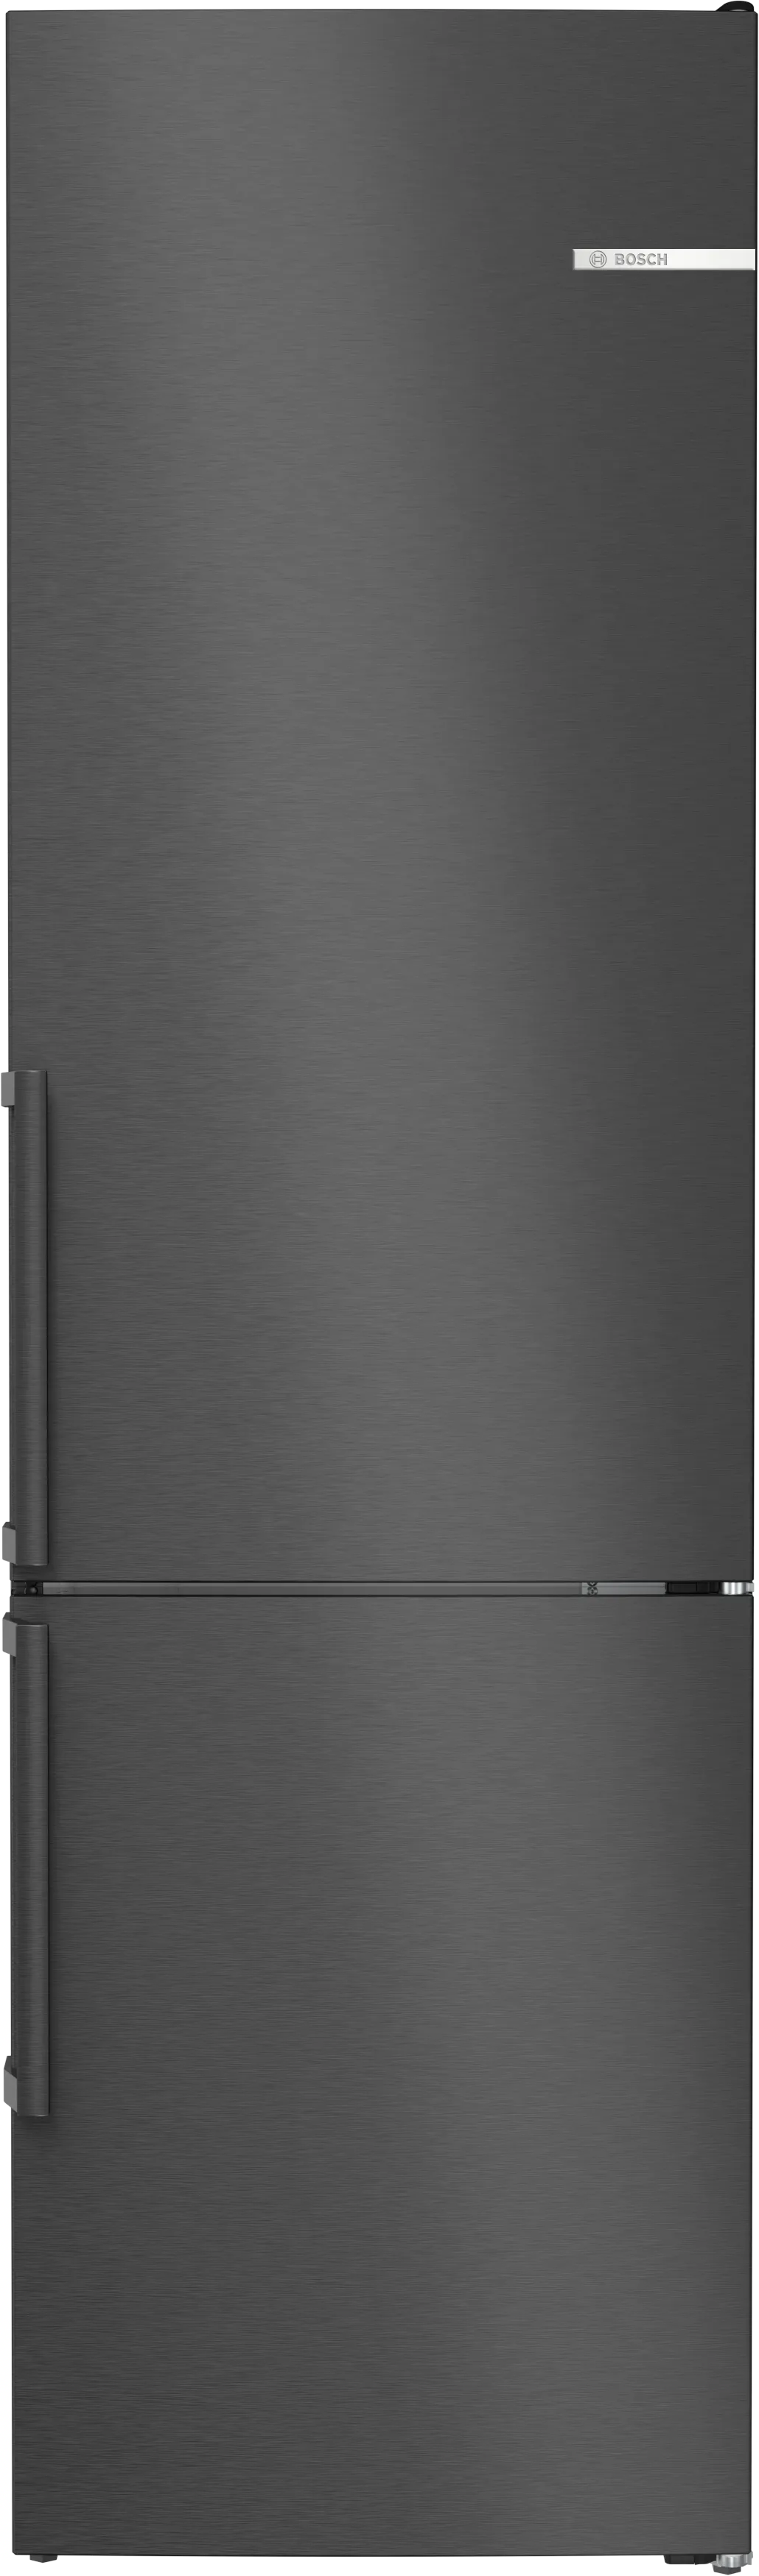 Serija 4 Laisvai statomas šaldytuvas-šaldiklis su šaldiklio skyriumi apačioje 203 x 60 cm Juodas nerūdijantis plienas 